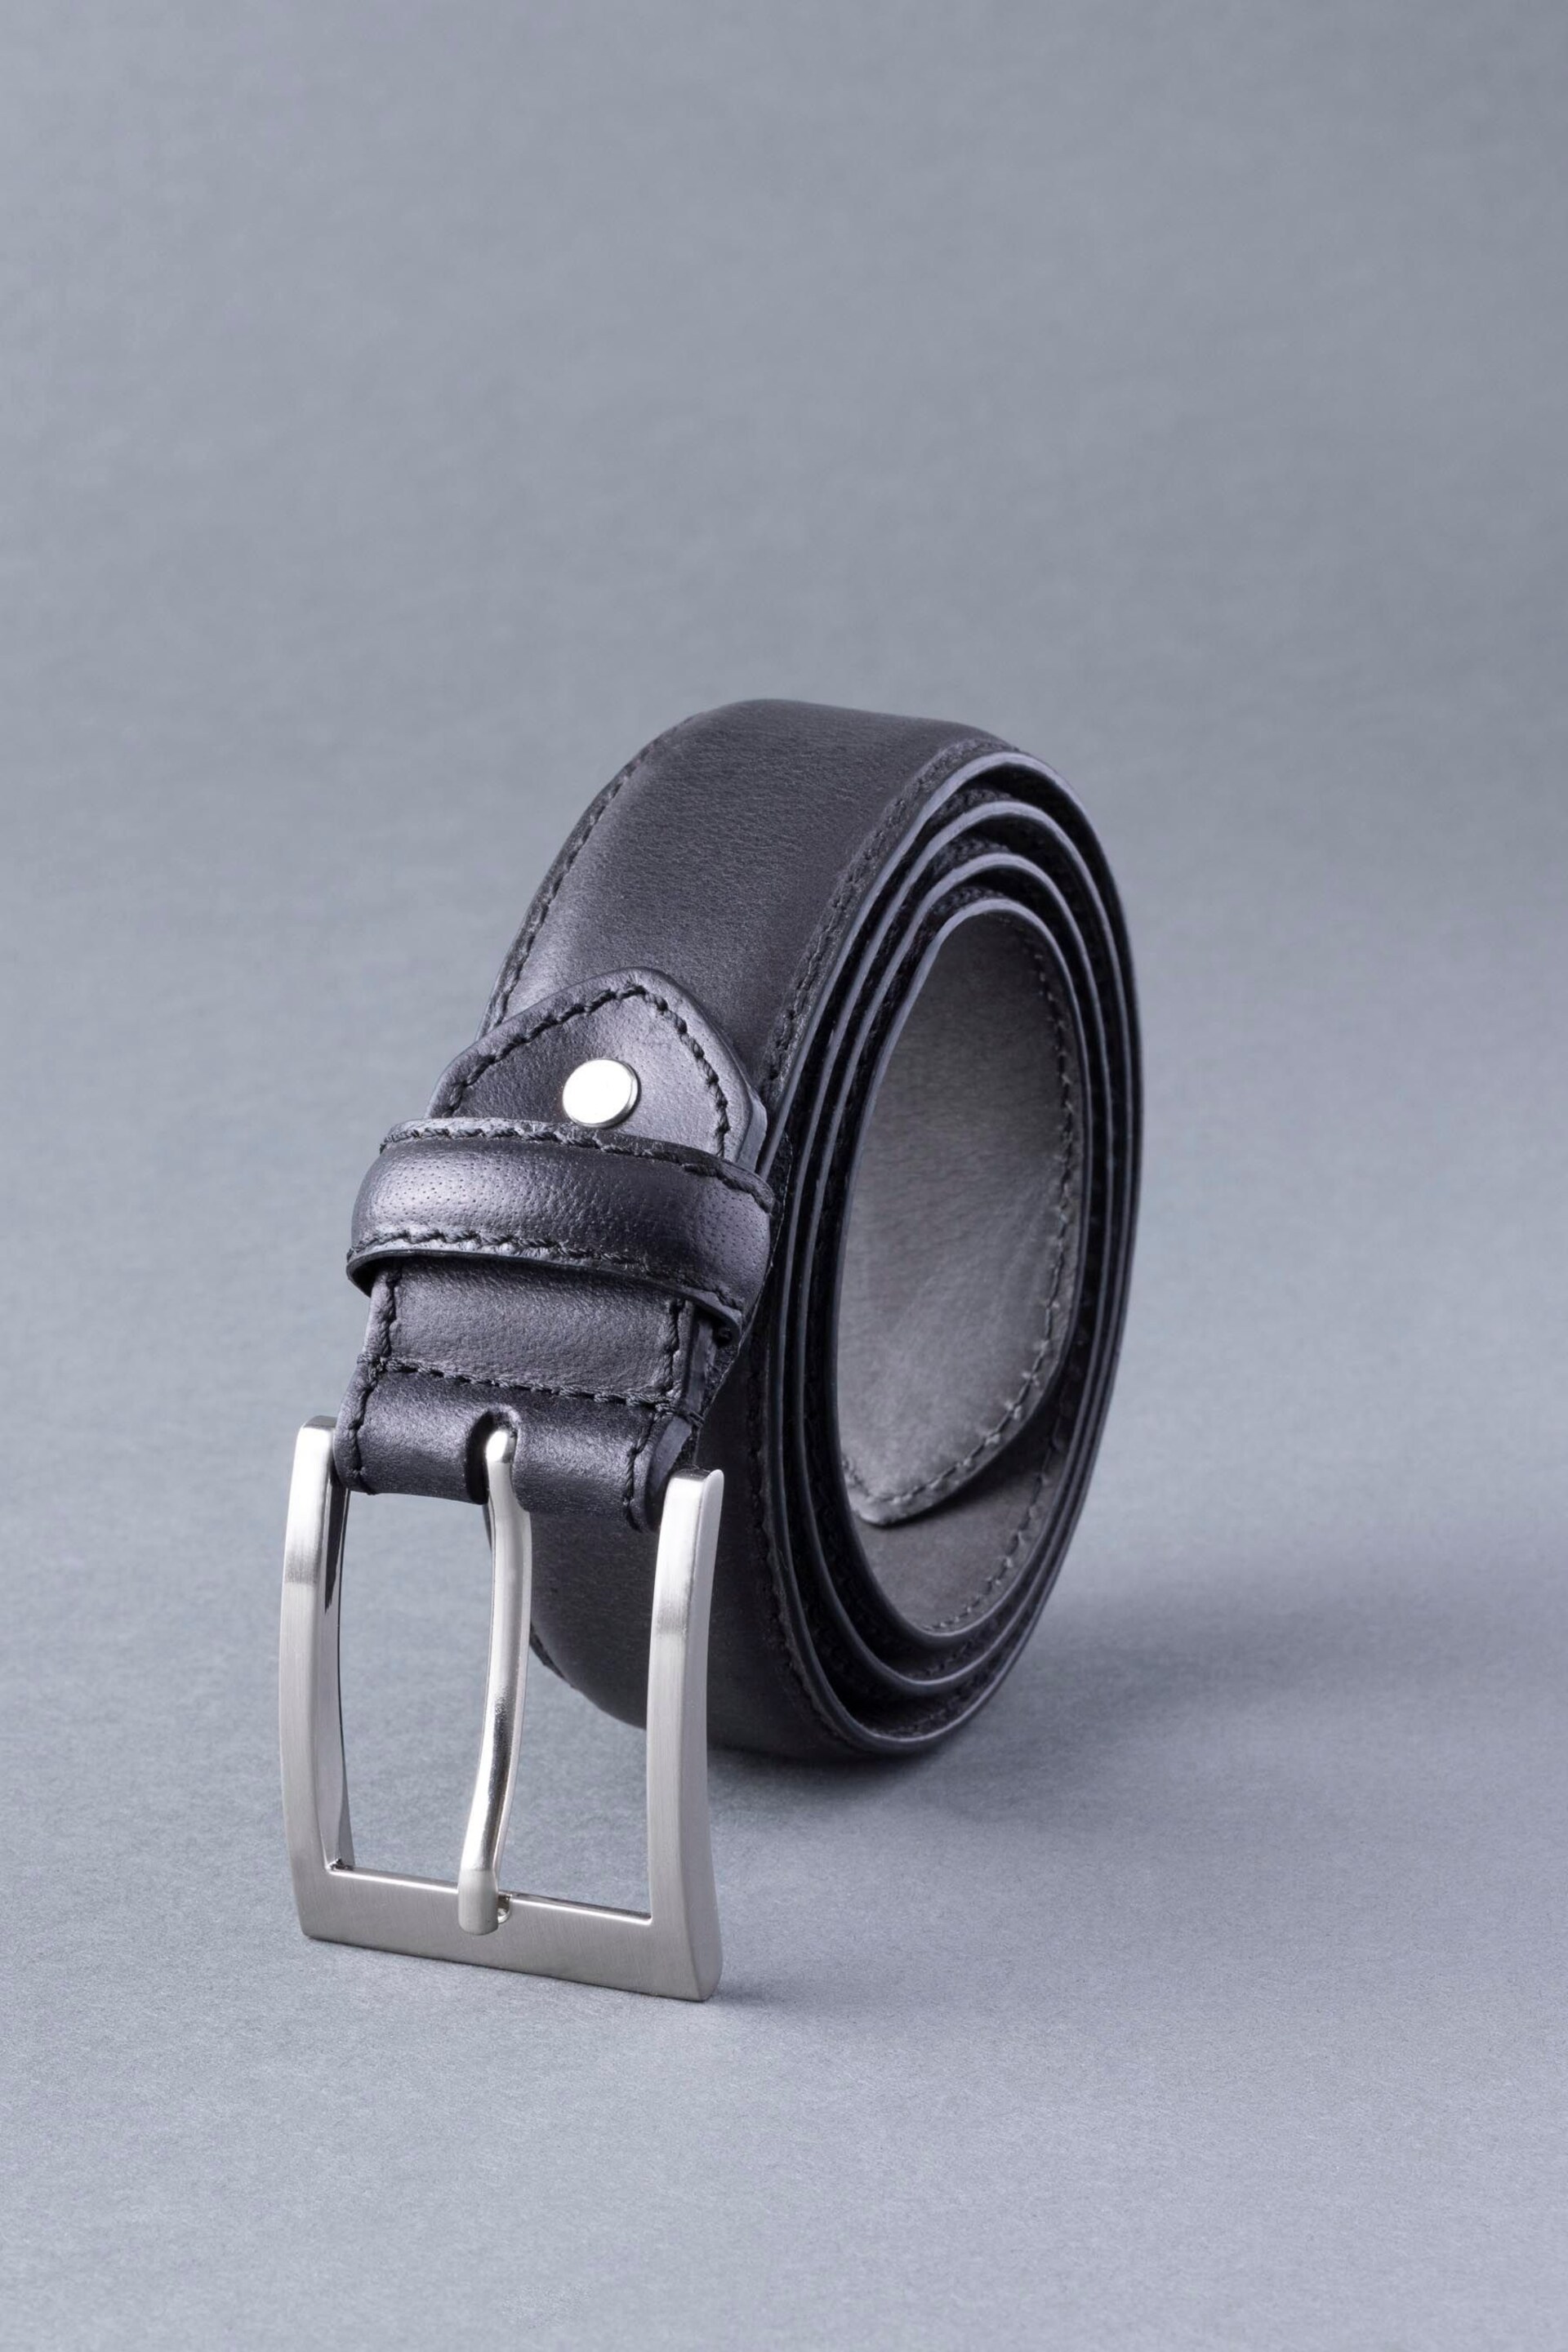 Lakeland Leather Staveley Leather Belt - Image 2 of 3